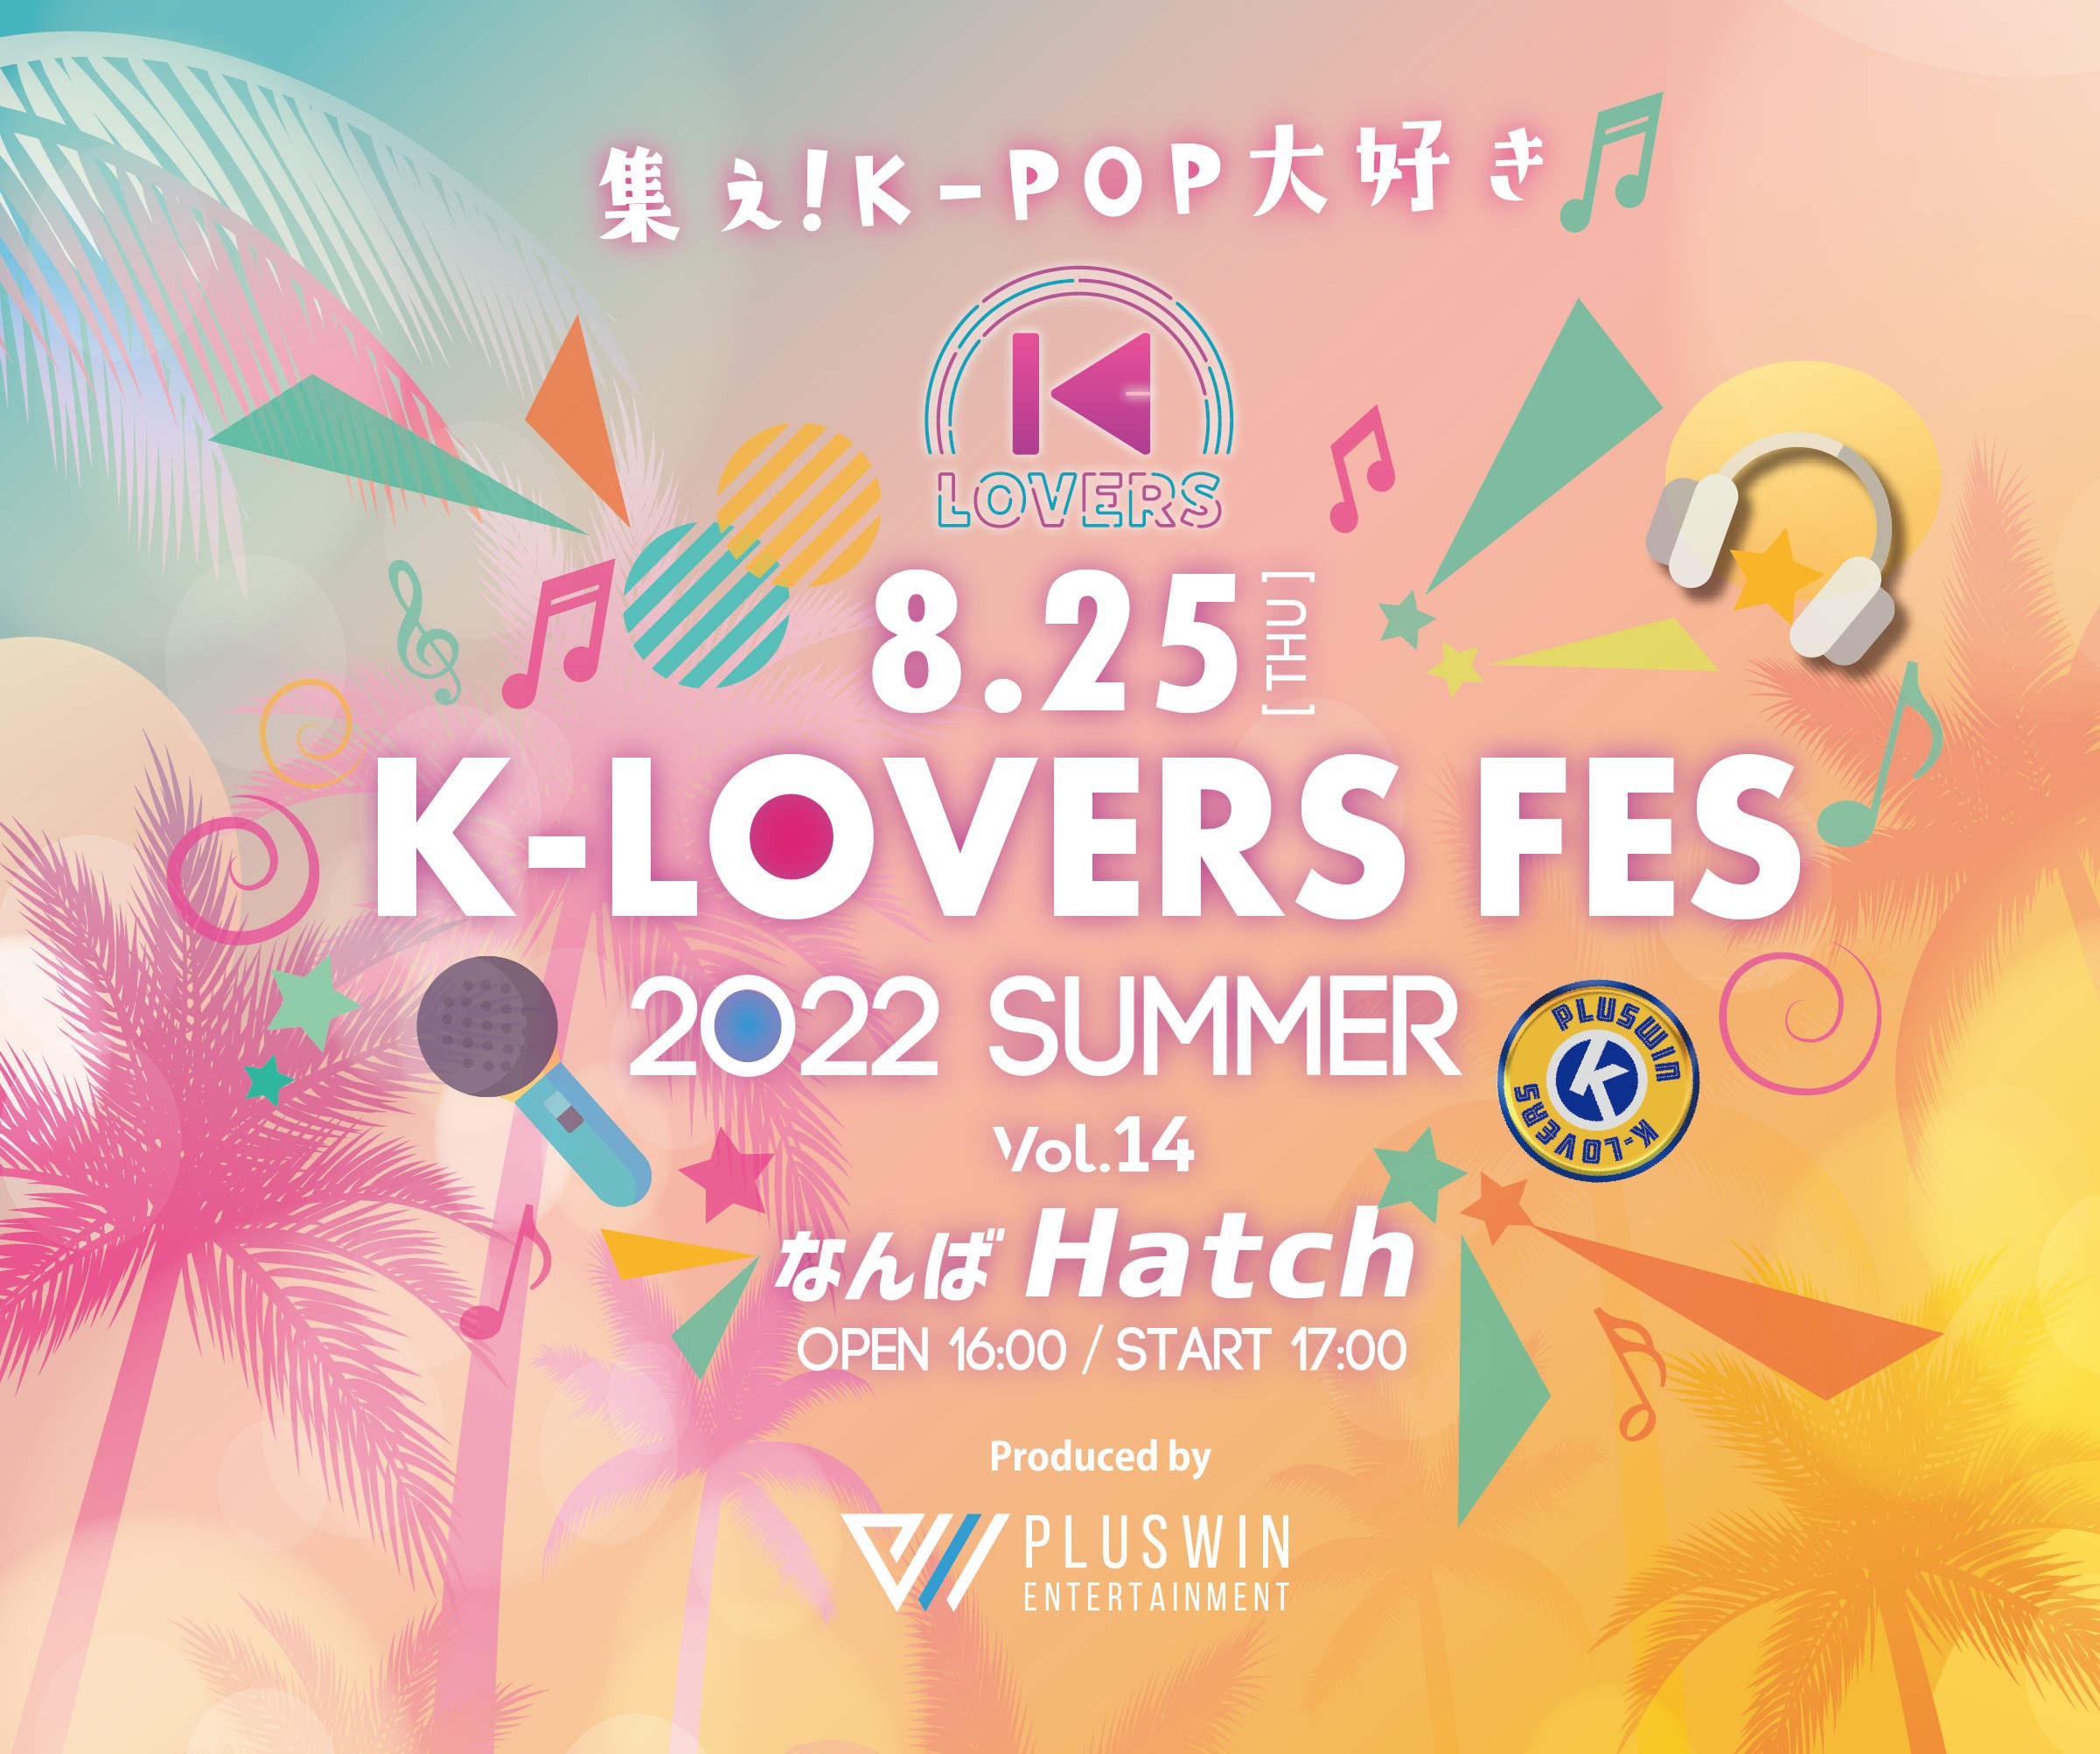 K-LOVERS FES 2022 Vol.14 SUMMER